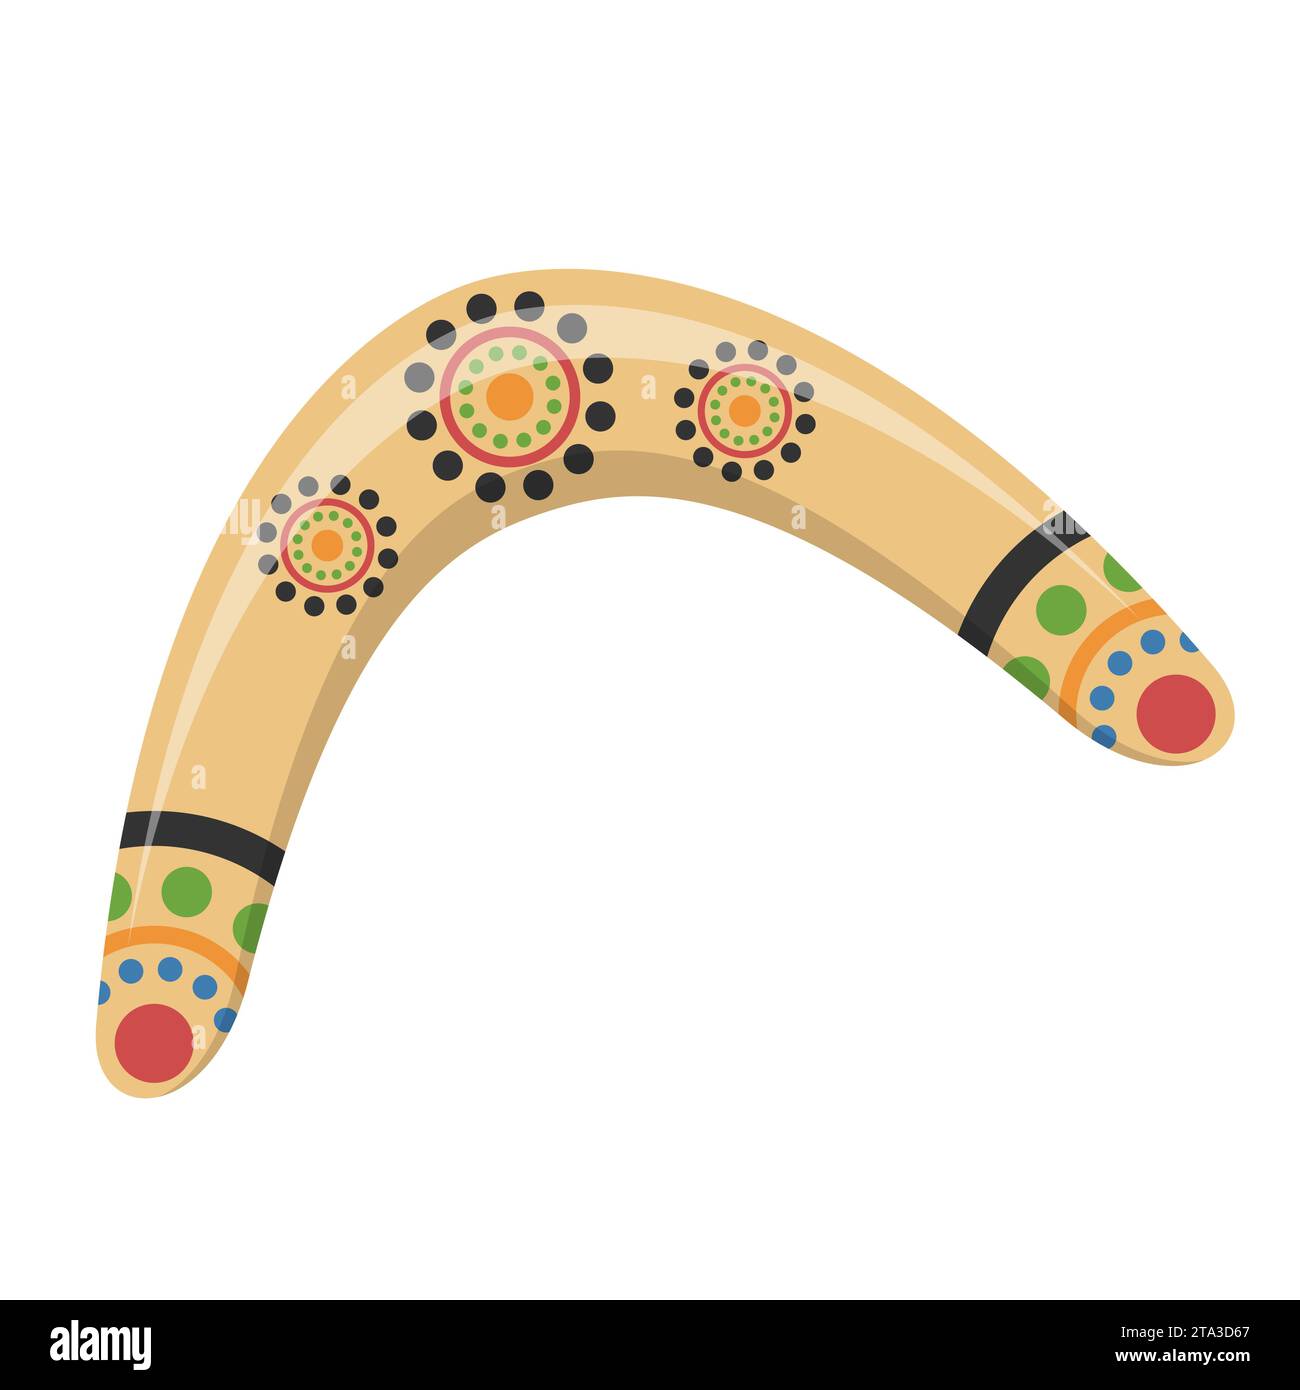 Traditionelles hölzernes Bumerang-Symbol isoliert auf weißem Hintergrund. Jagd- und Sportwaffe aus Australien. Hölzerner Bumerang der Aborigines. Stock Vektor